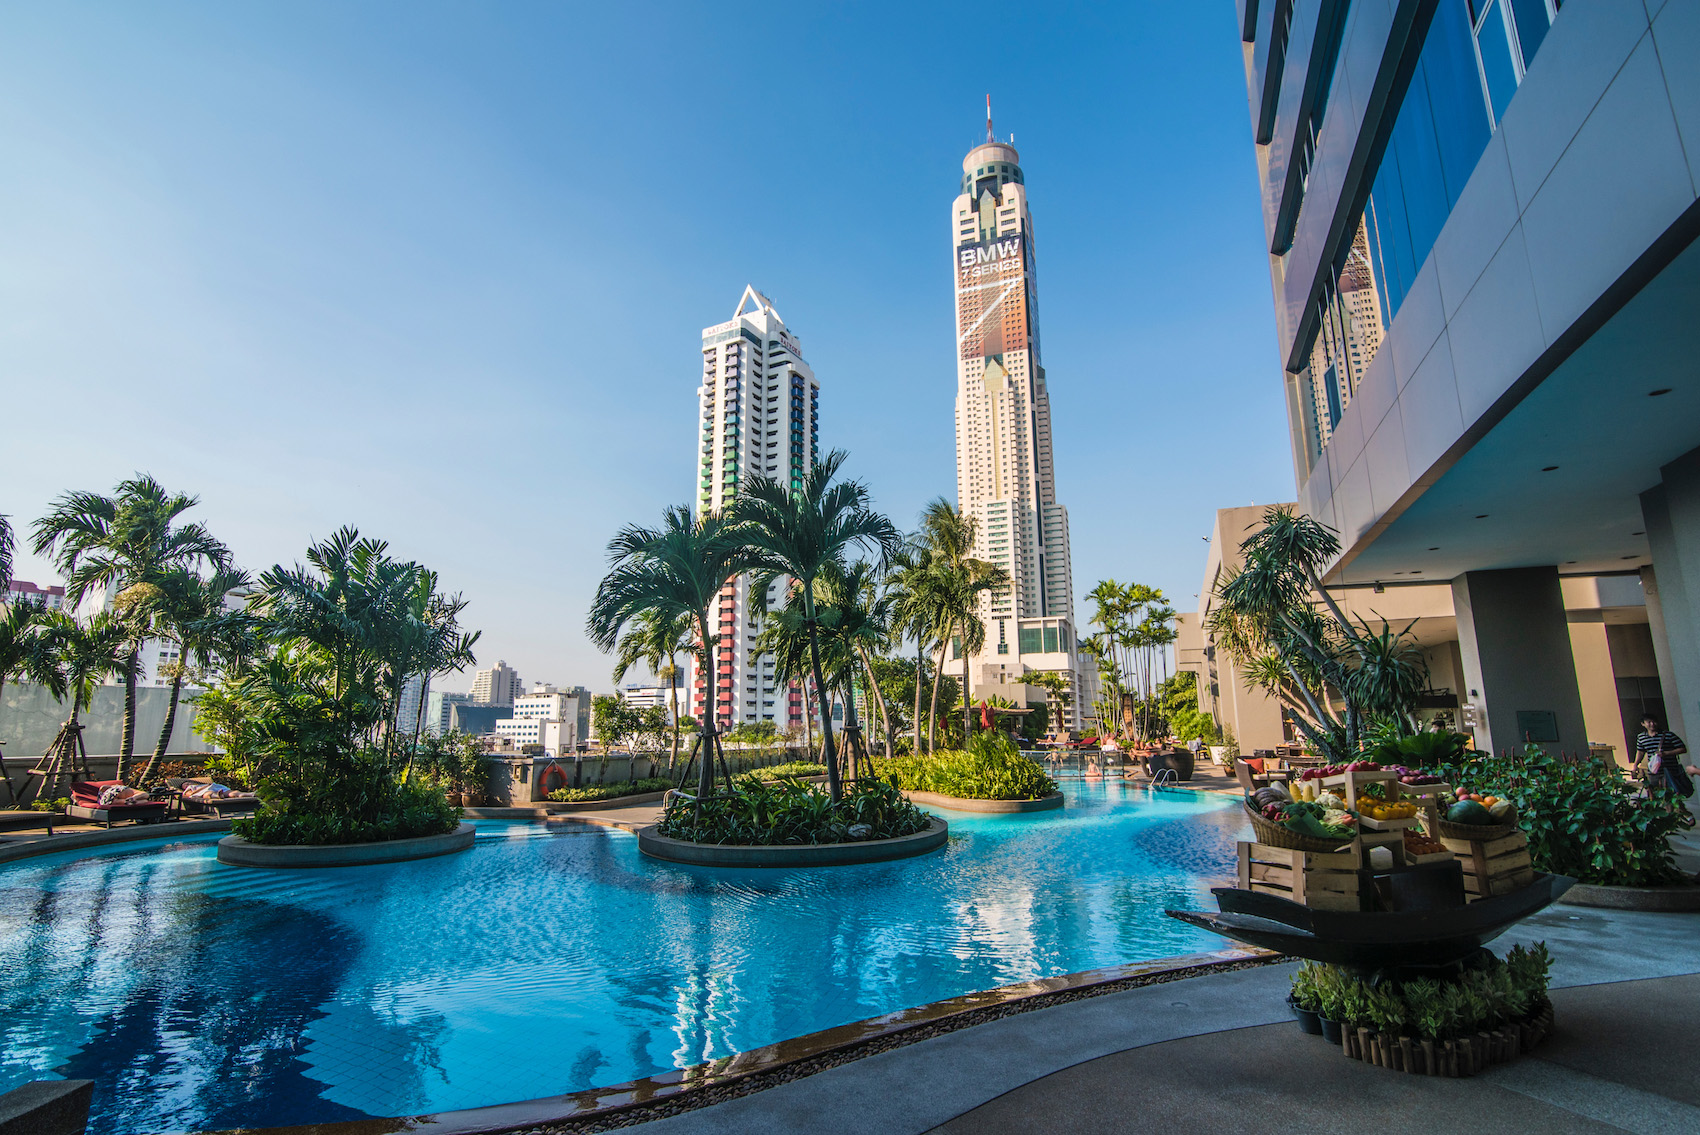 Lap Up the Luxury at Bangkok's Amari Watergate Hotel • We Blog The World